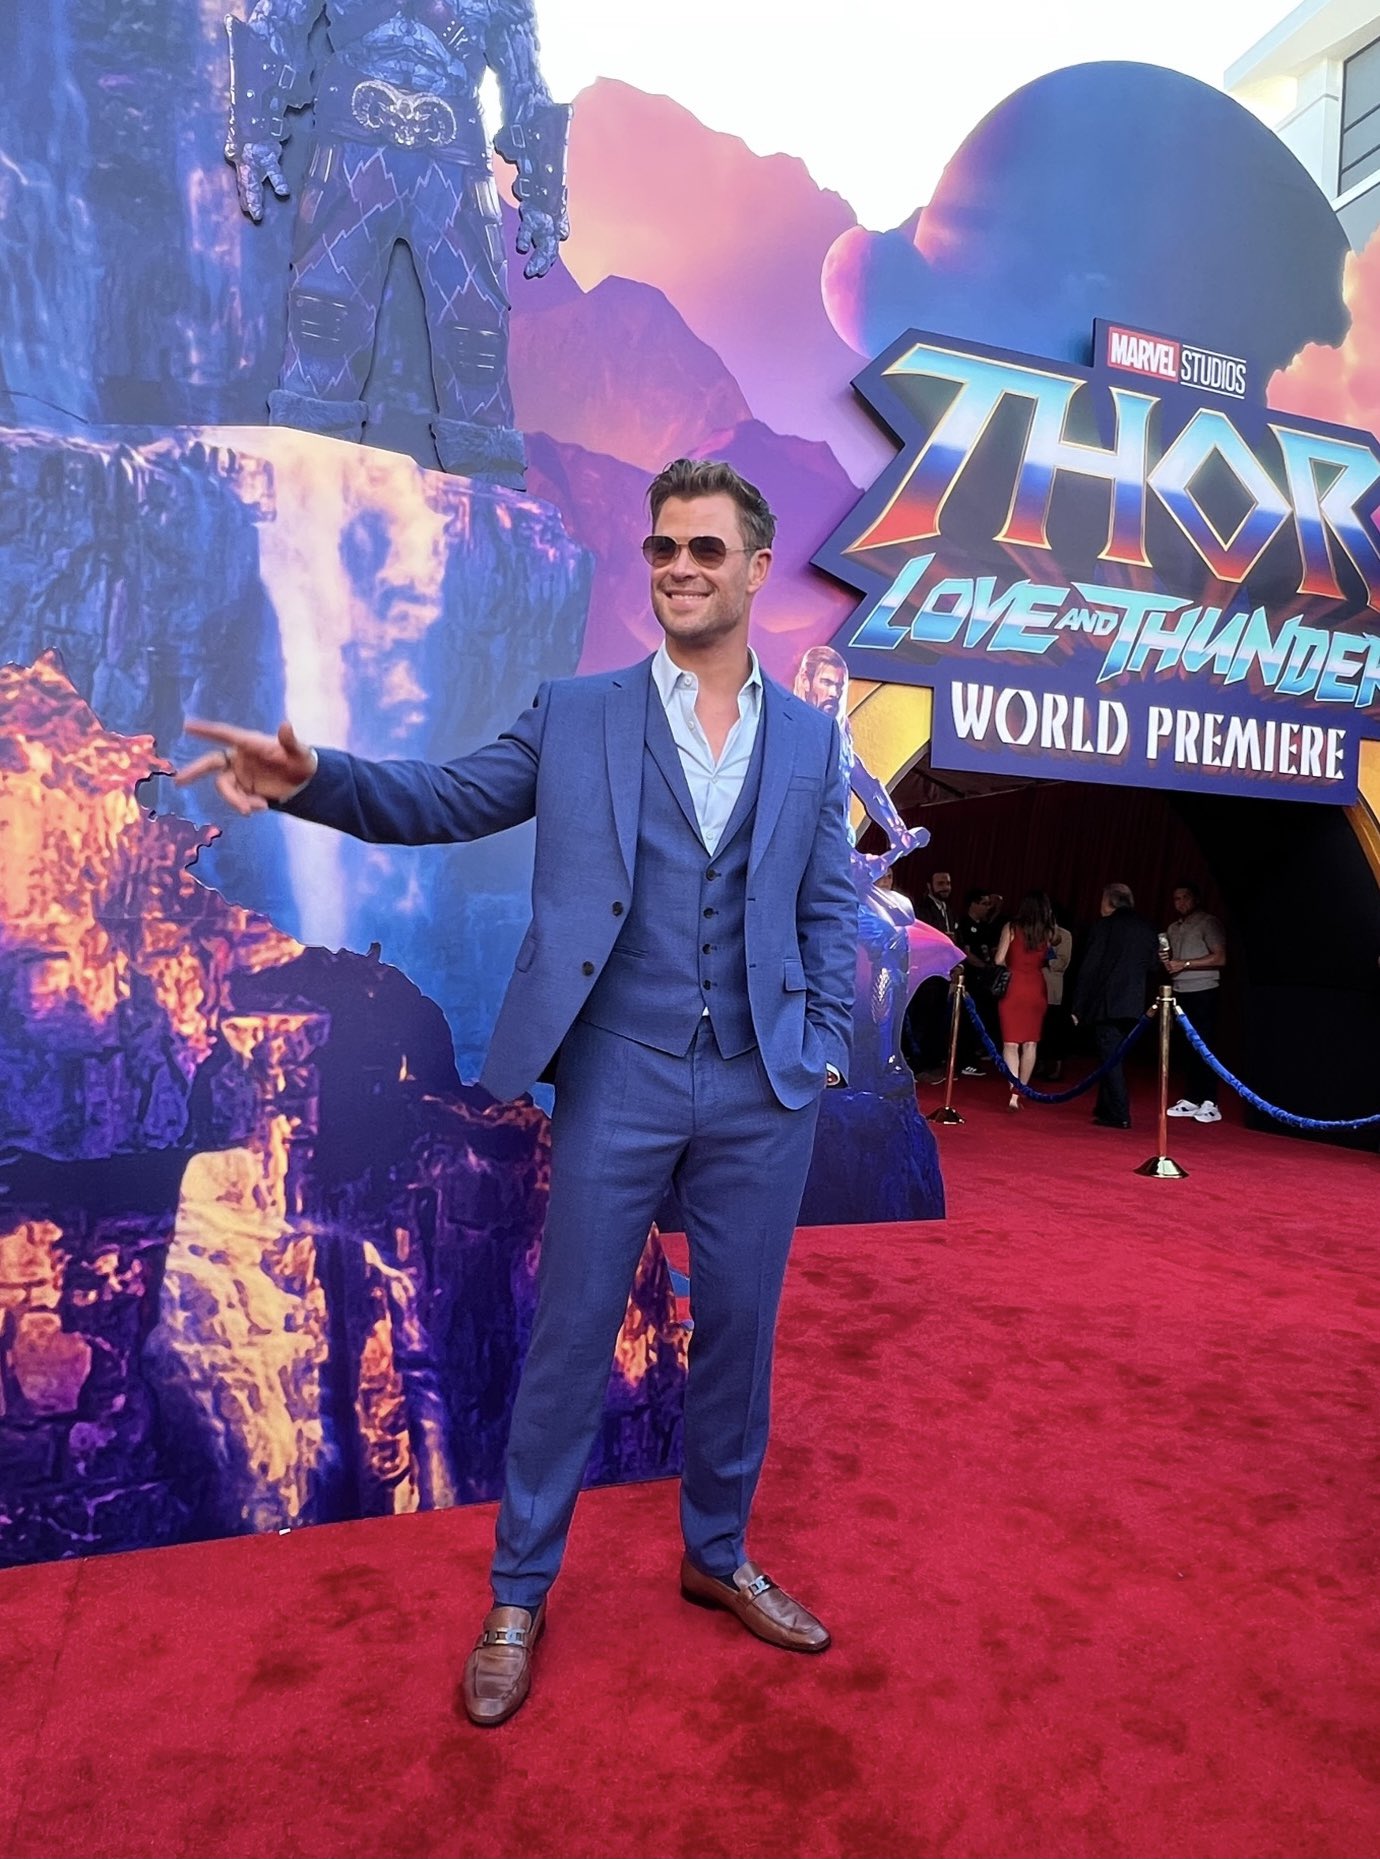 Marvel Studios comparte videos y fotos del estreno del evento 'Thor: Love And Thunder'